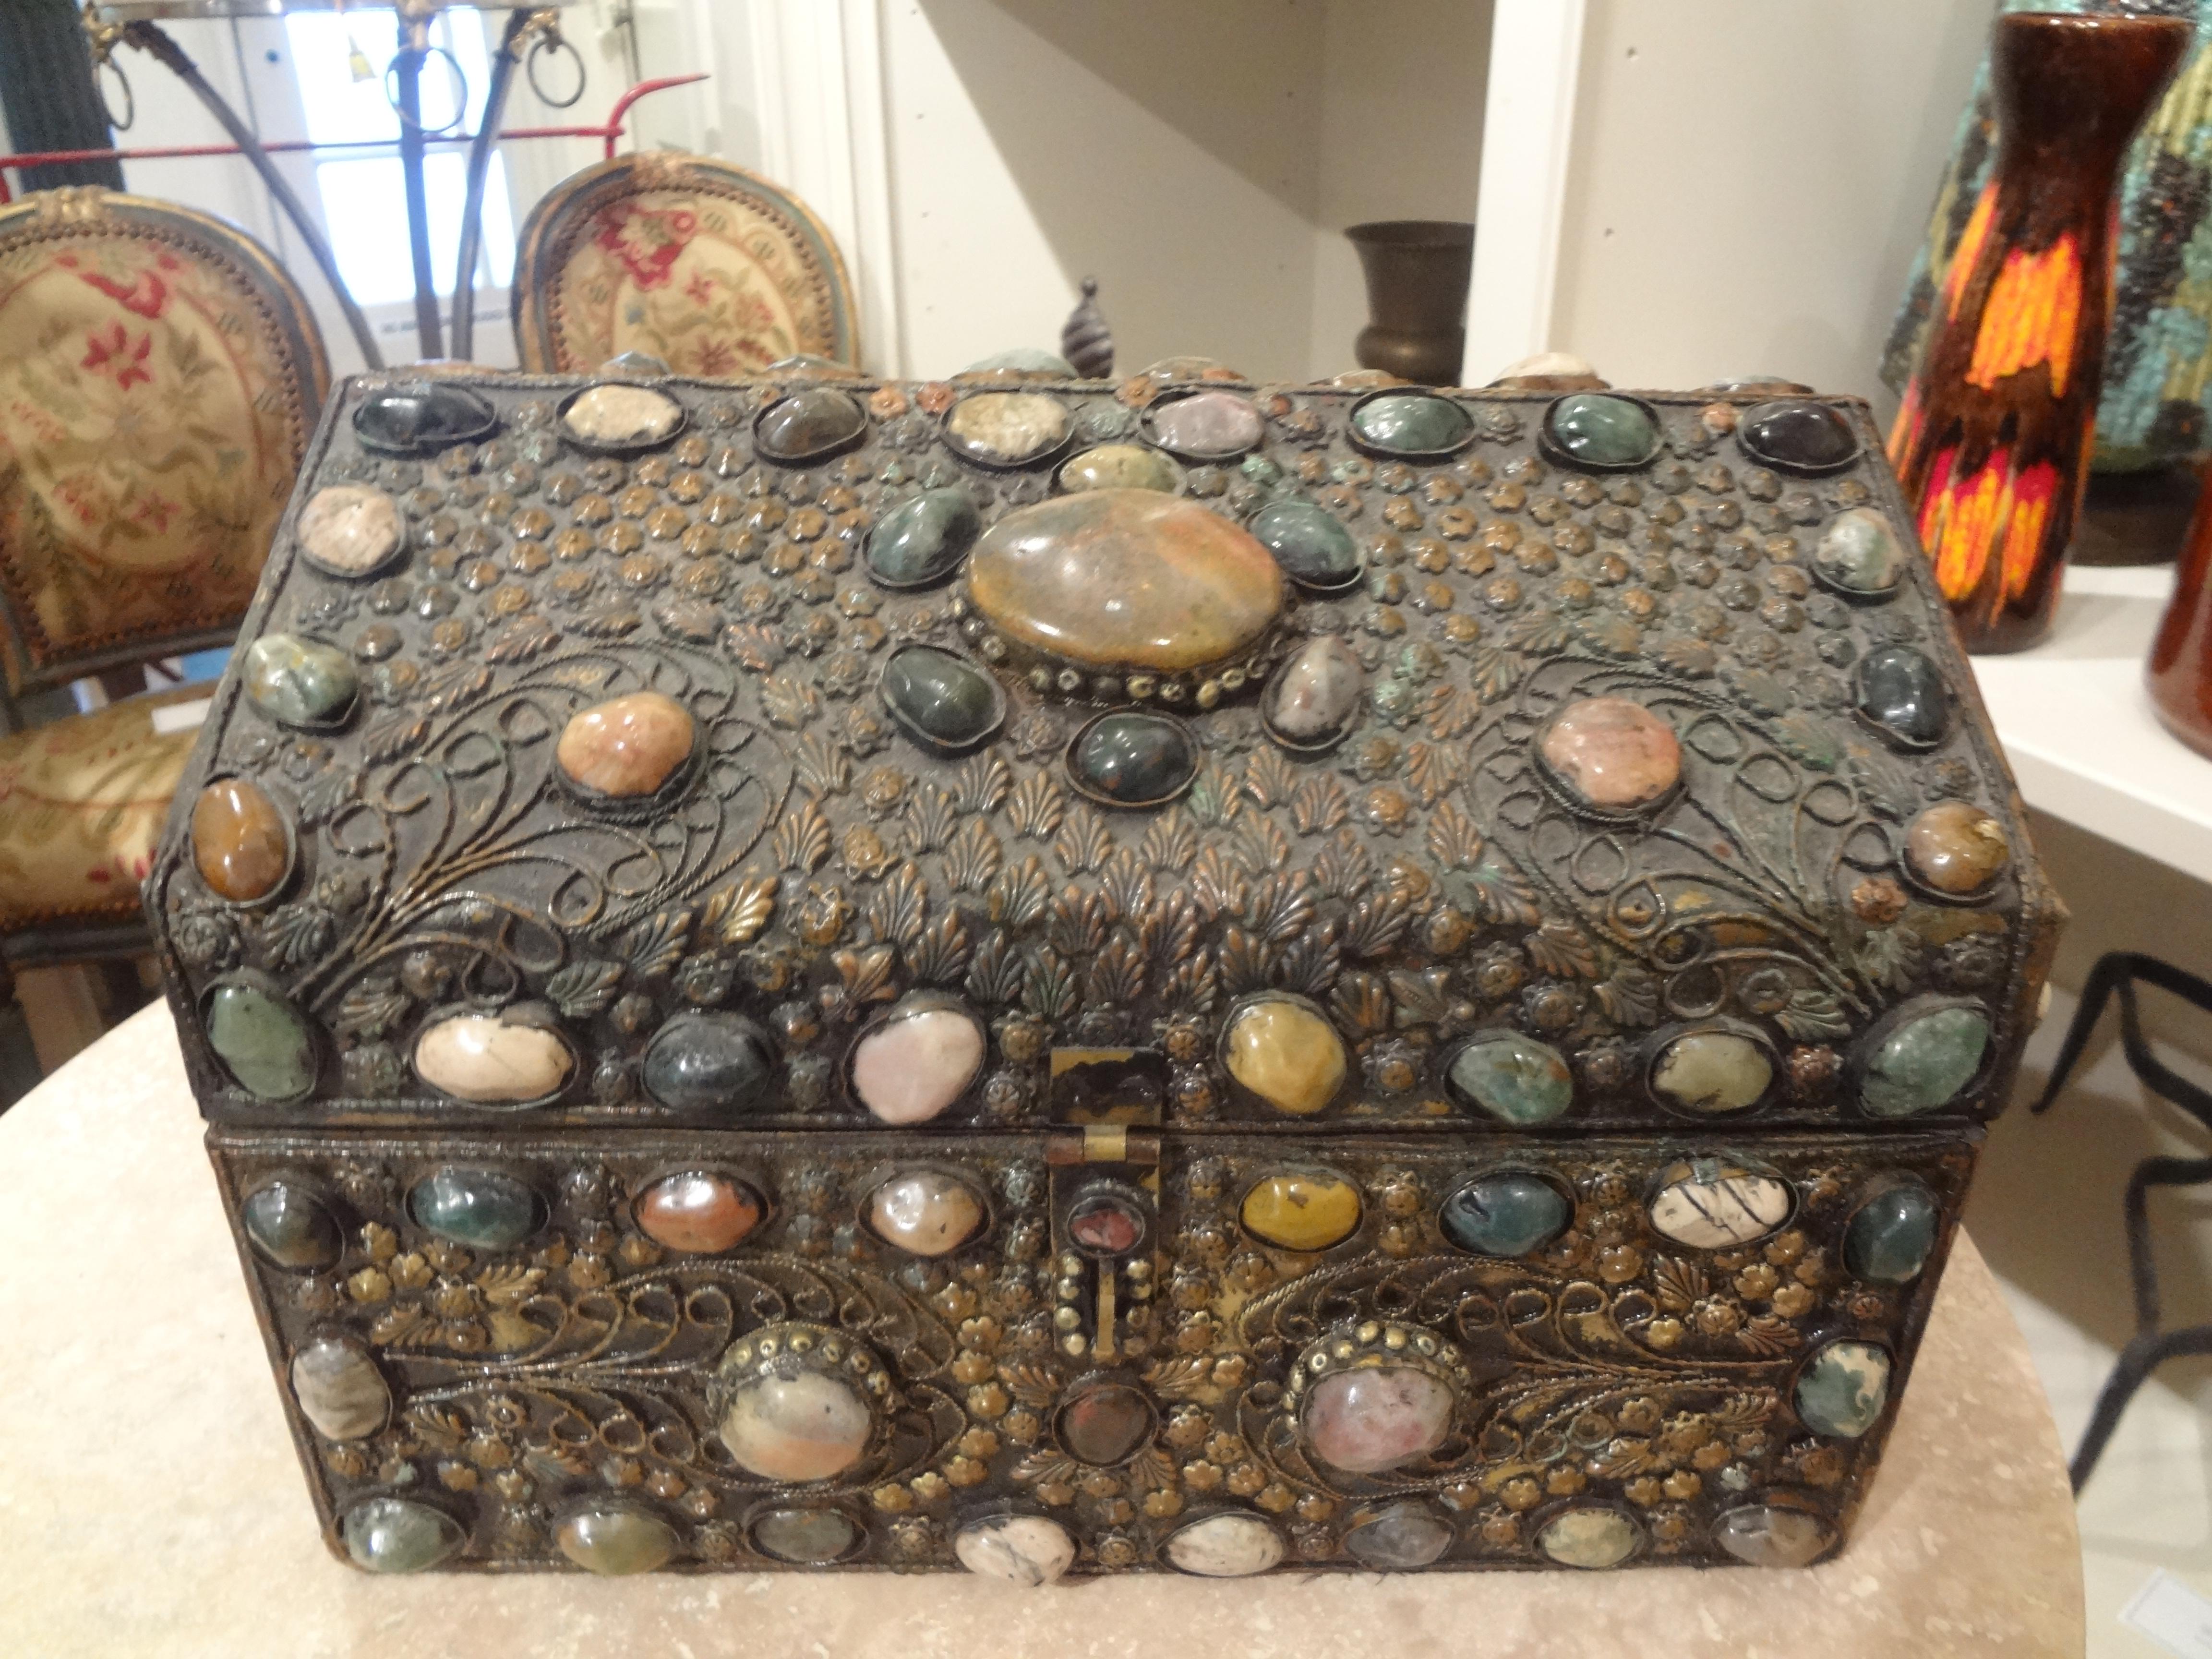 Boîte vintage incrustée d'agate mauresque. Cette intéressante boîte décorative en métal argenté du Moyen-Orient est incrustée de pierres d'agate multicolores de formes et de tailles variées. Notre superbe boîte anglo-indienne, probablement